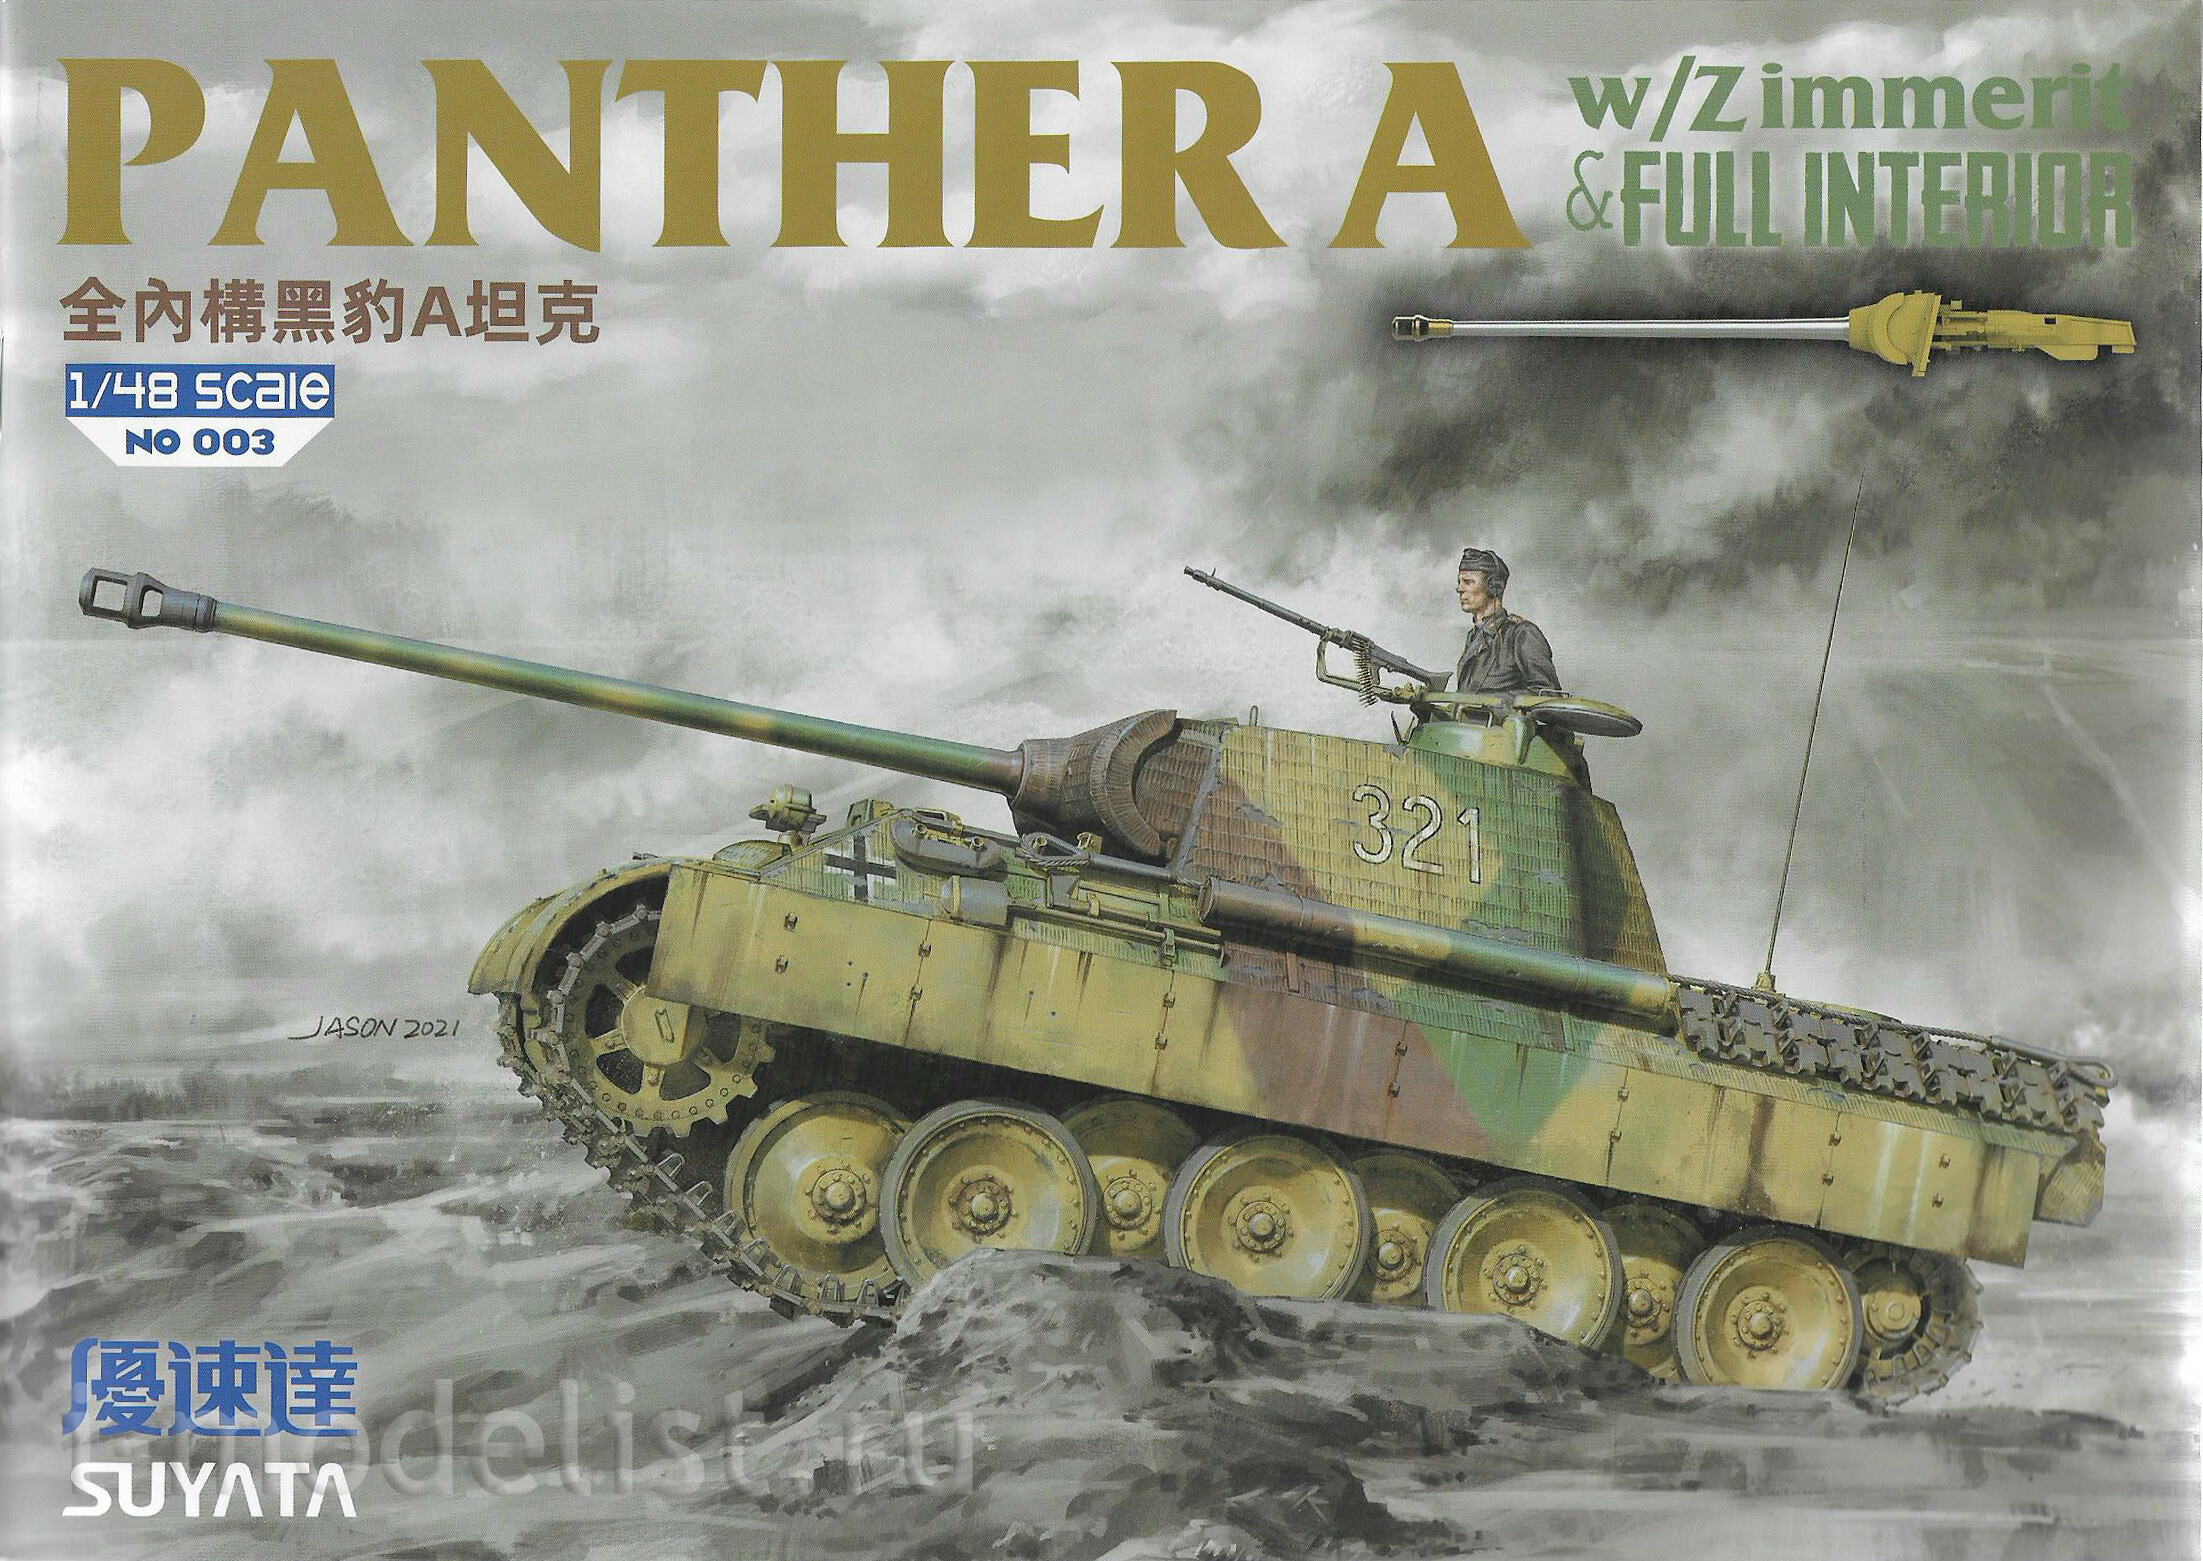 NO-003 Suyata 1/48 Panther A c циммеритом и полным интерьером